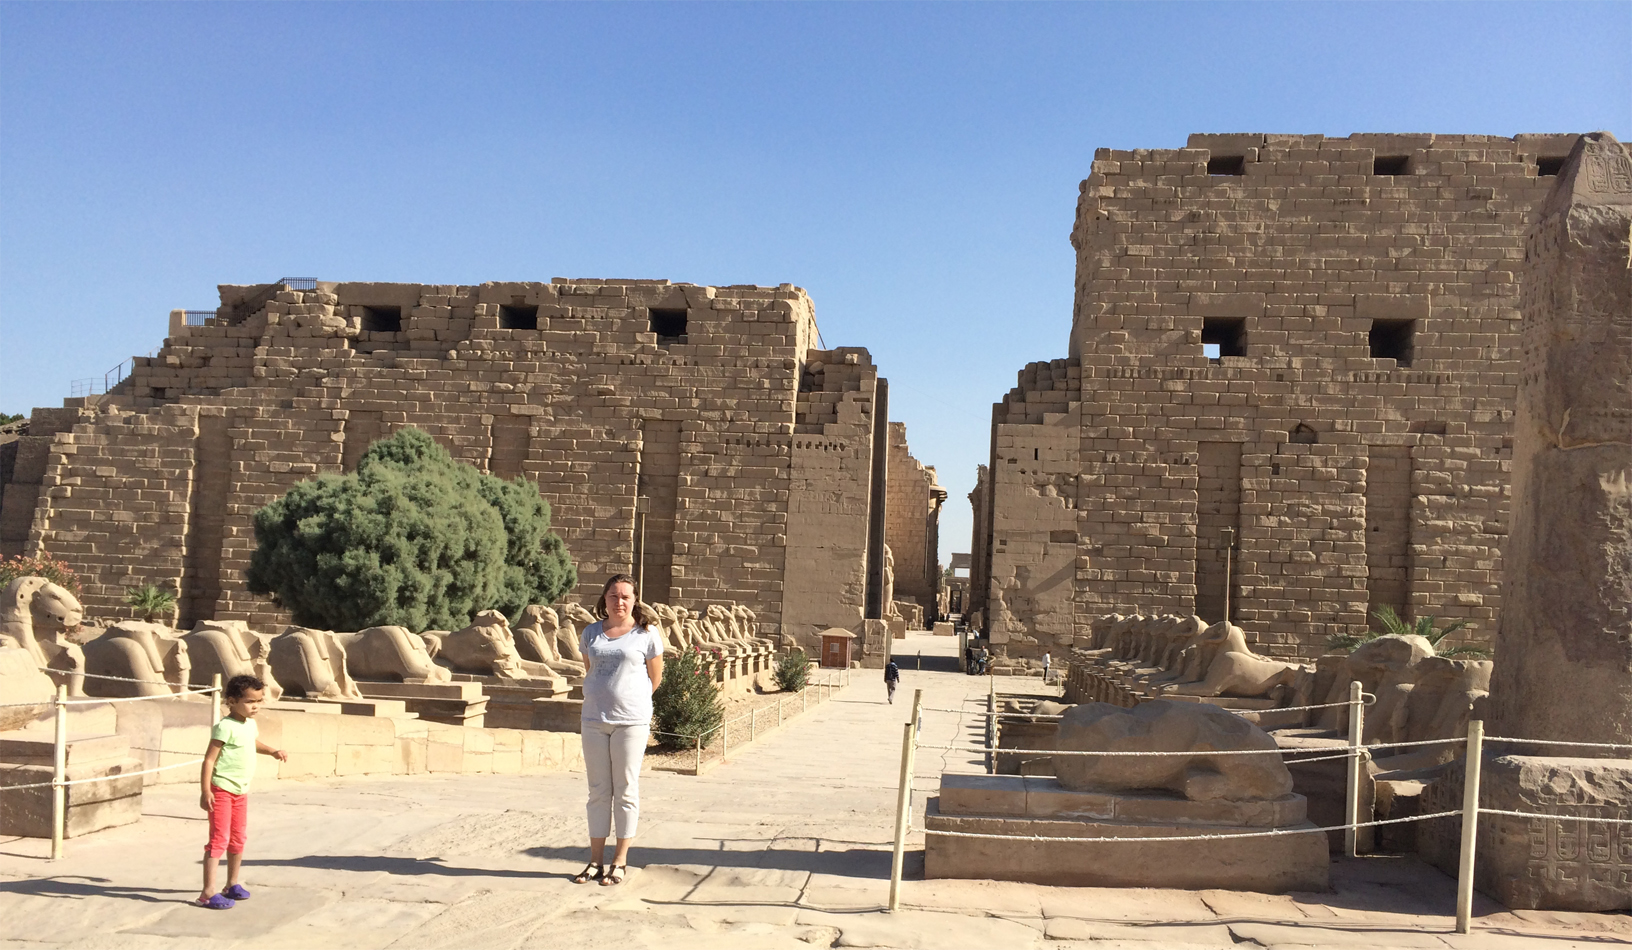 
Entrada al templo de Karnak